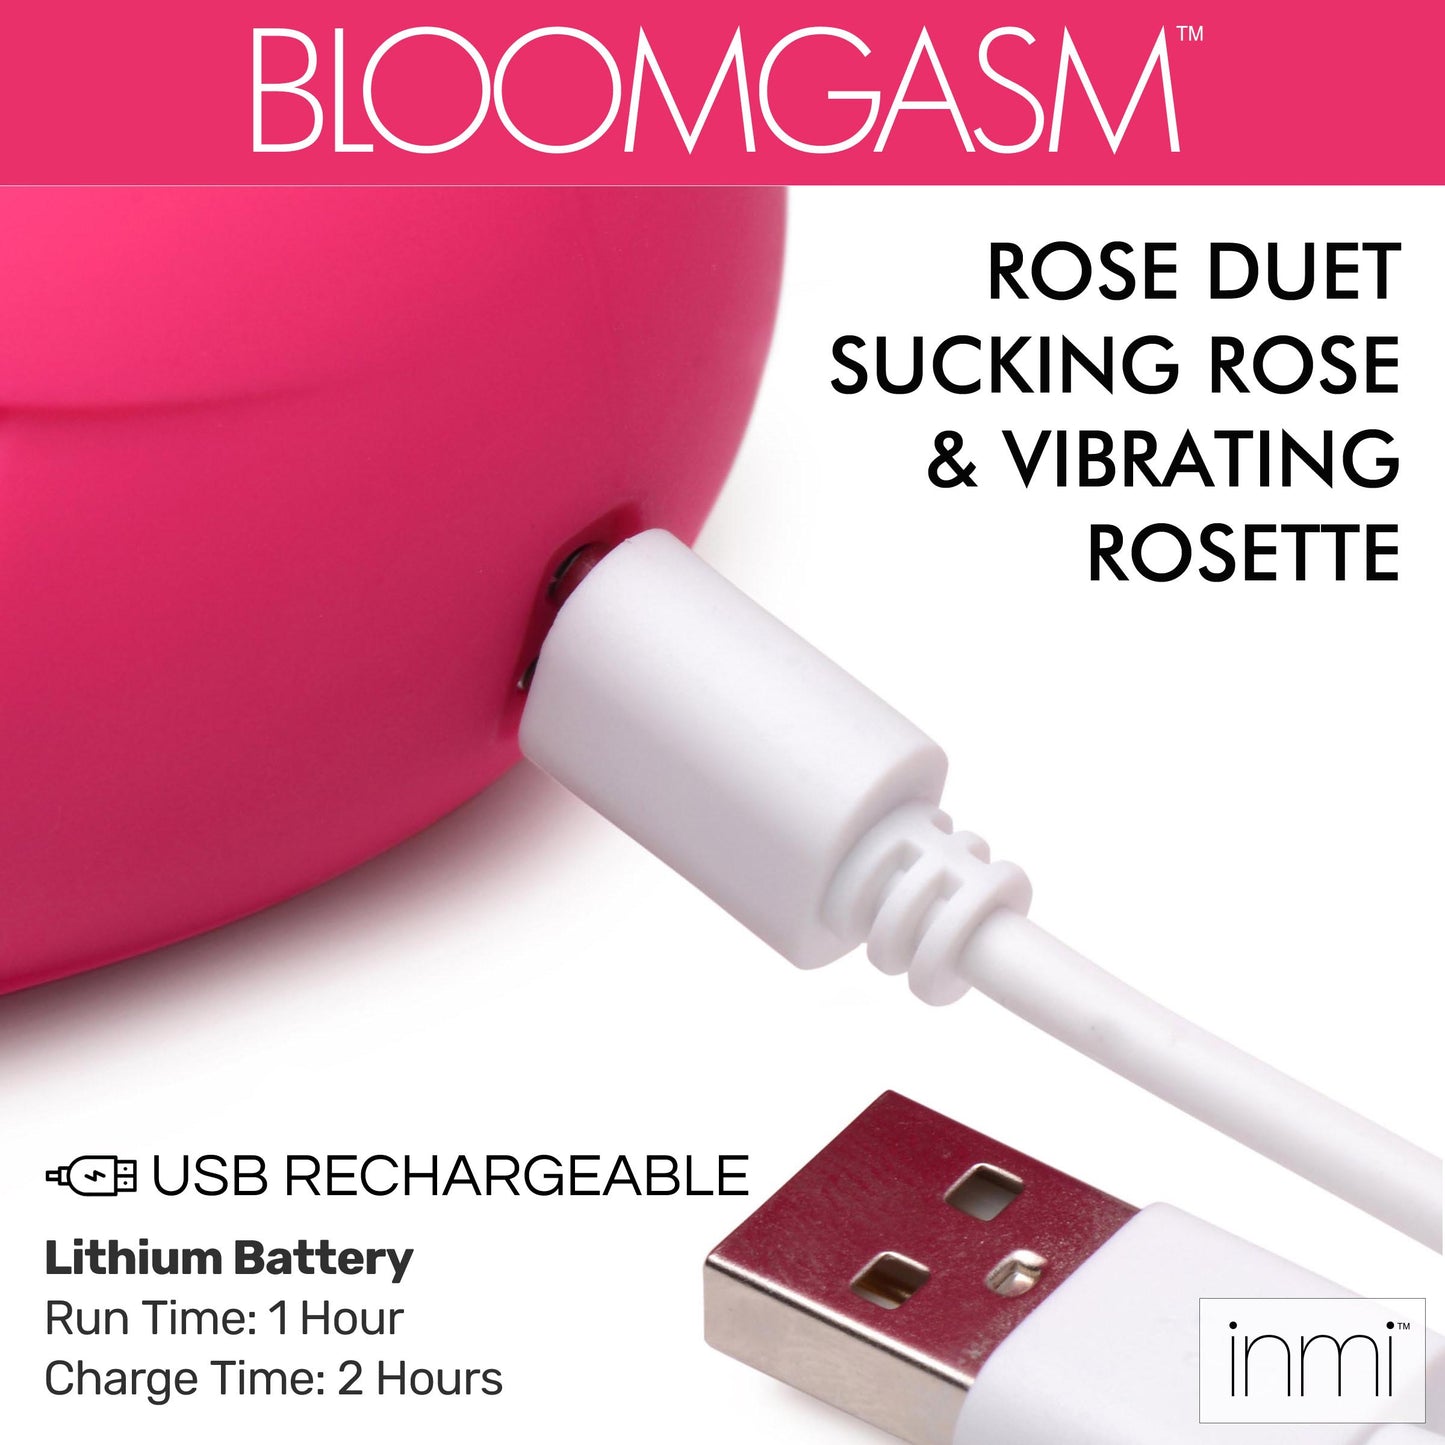 Bloomgasm Rose Duet Sucking Rose and Vibrating Rosette - UABDSM